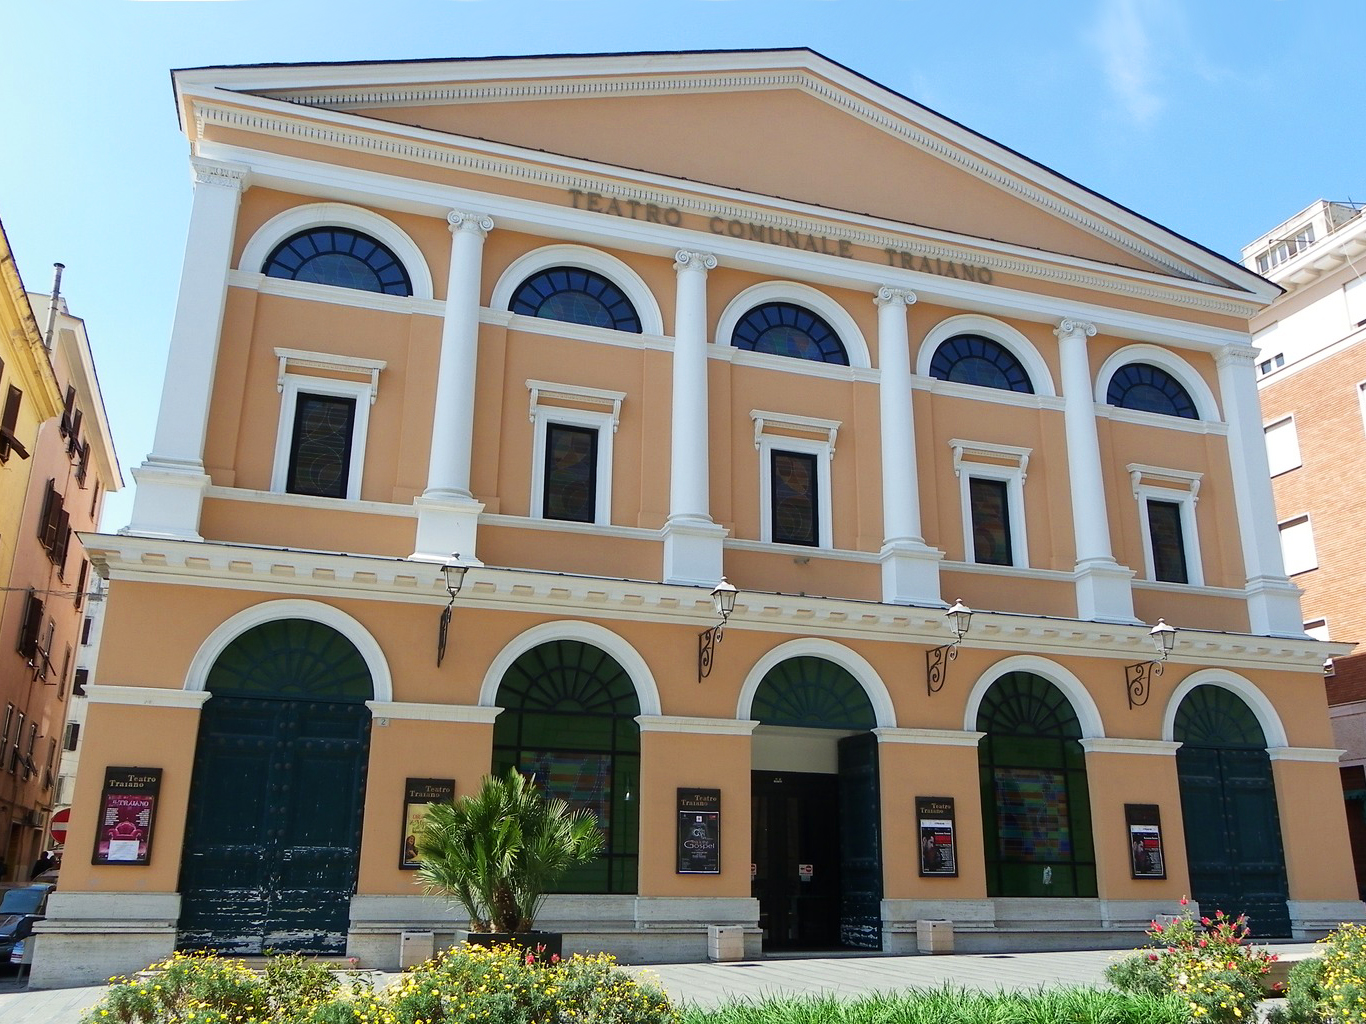 Il Teatro Comunale Traiano in Corso Centocelle